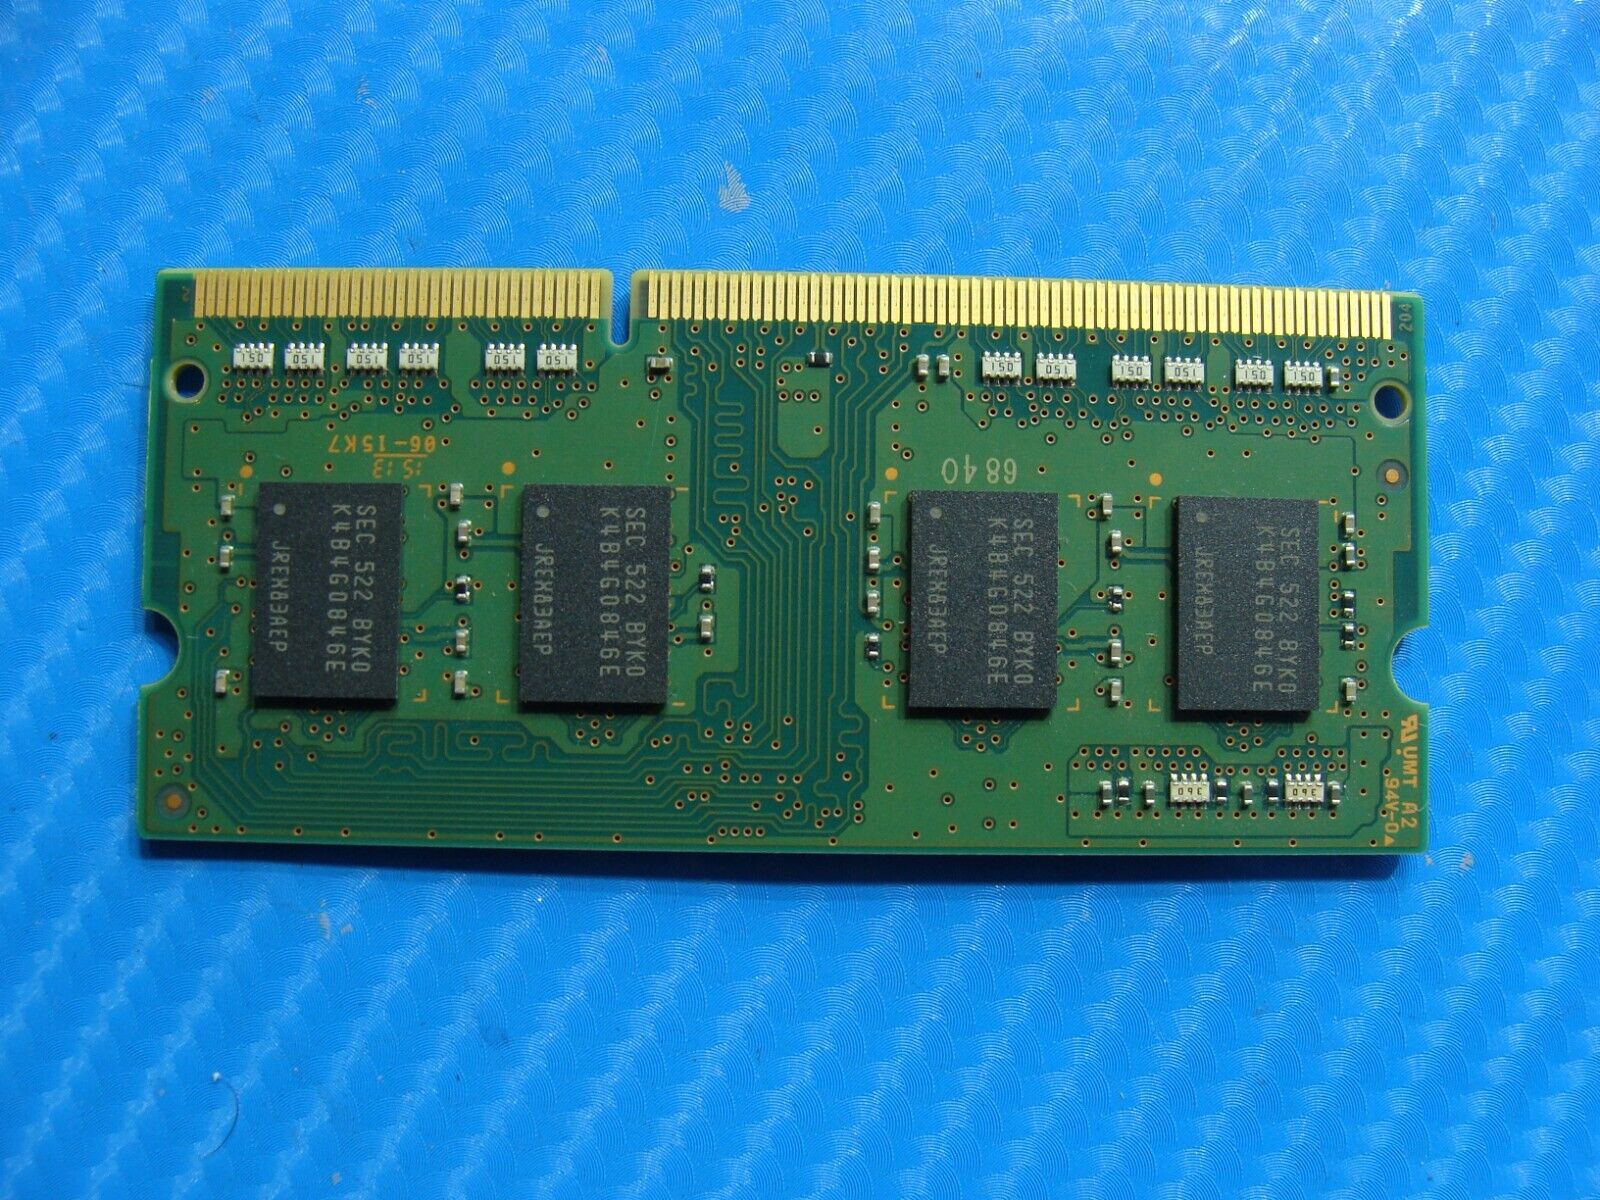 Asus Q303UA Samsung 4GB 1Rx8 PC3L-12800S Memory RAM SO-DIMM M471B5173EB0-YK0